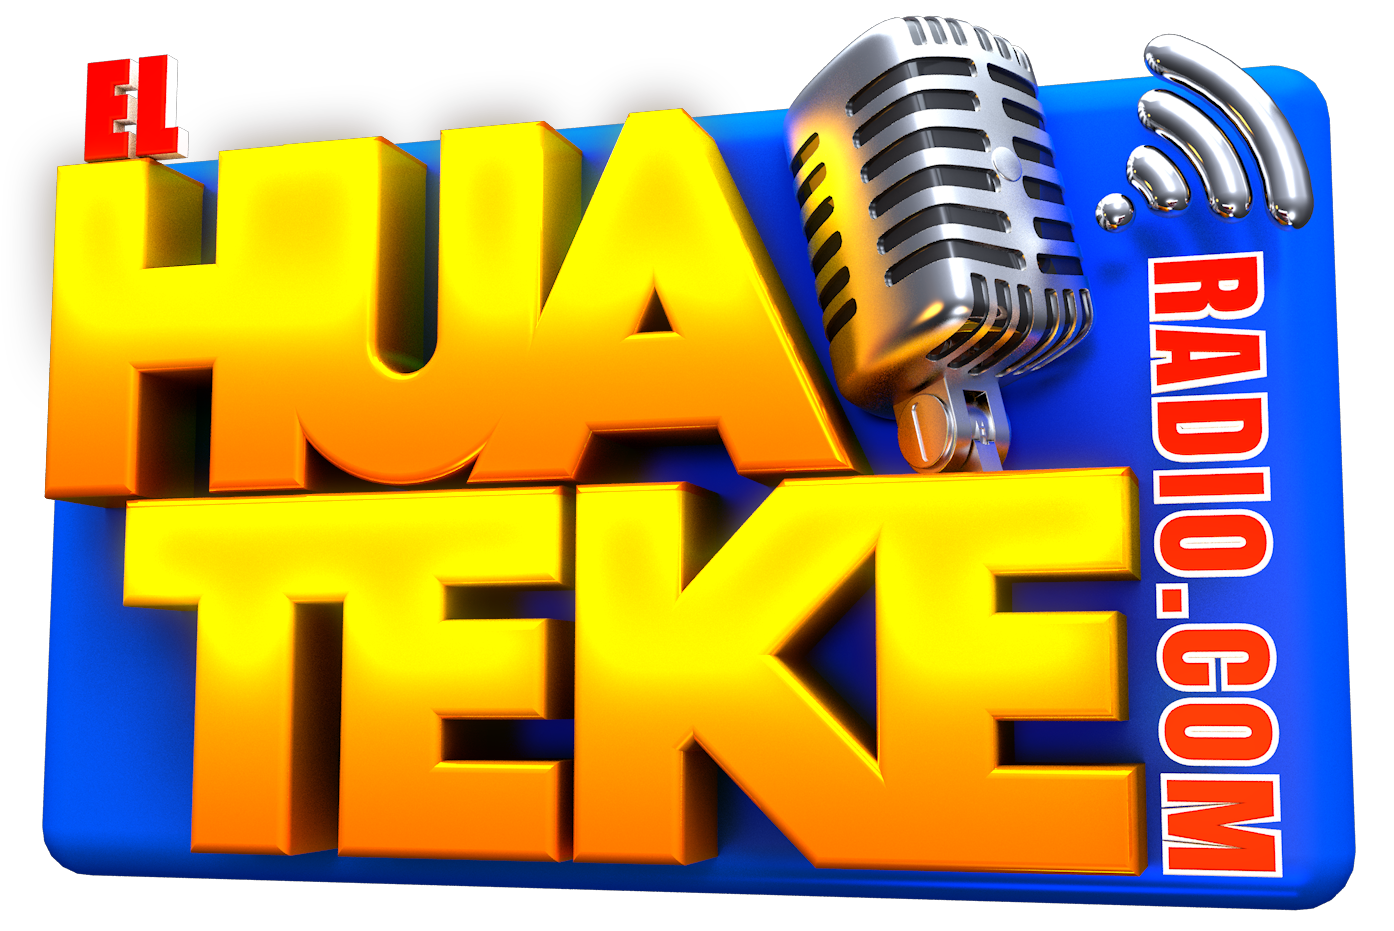 El Huateke Radio